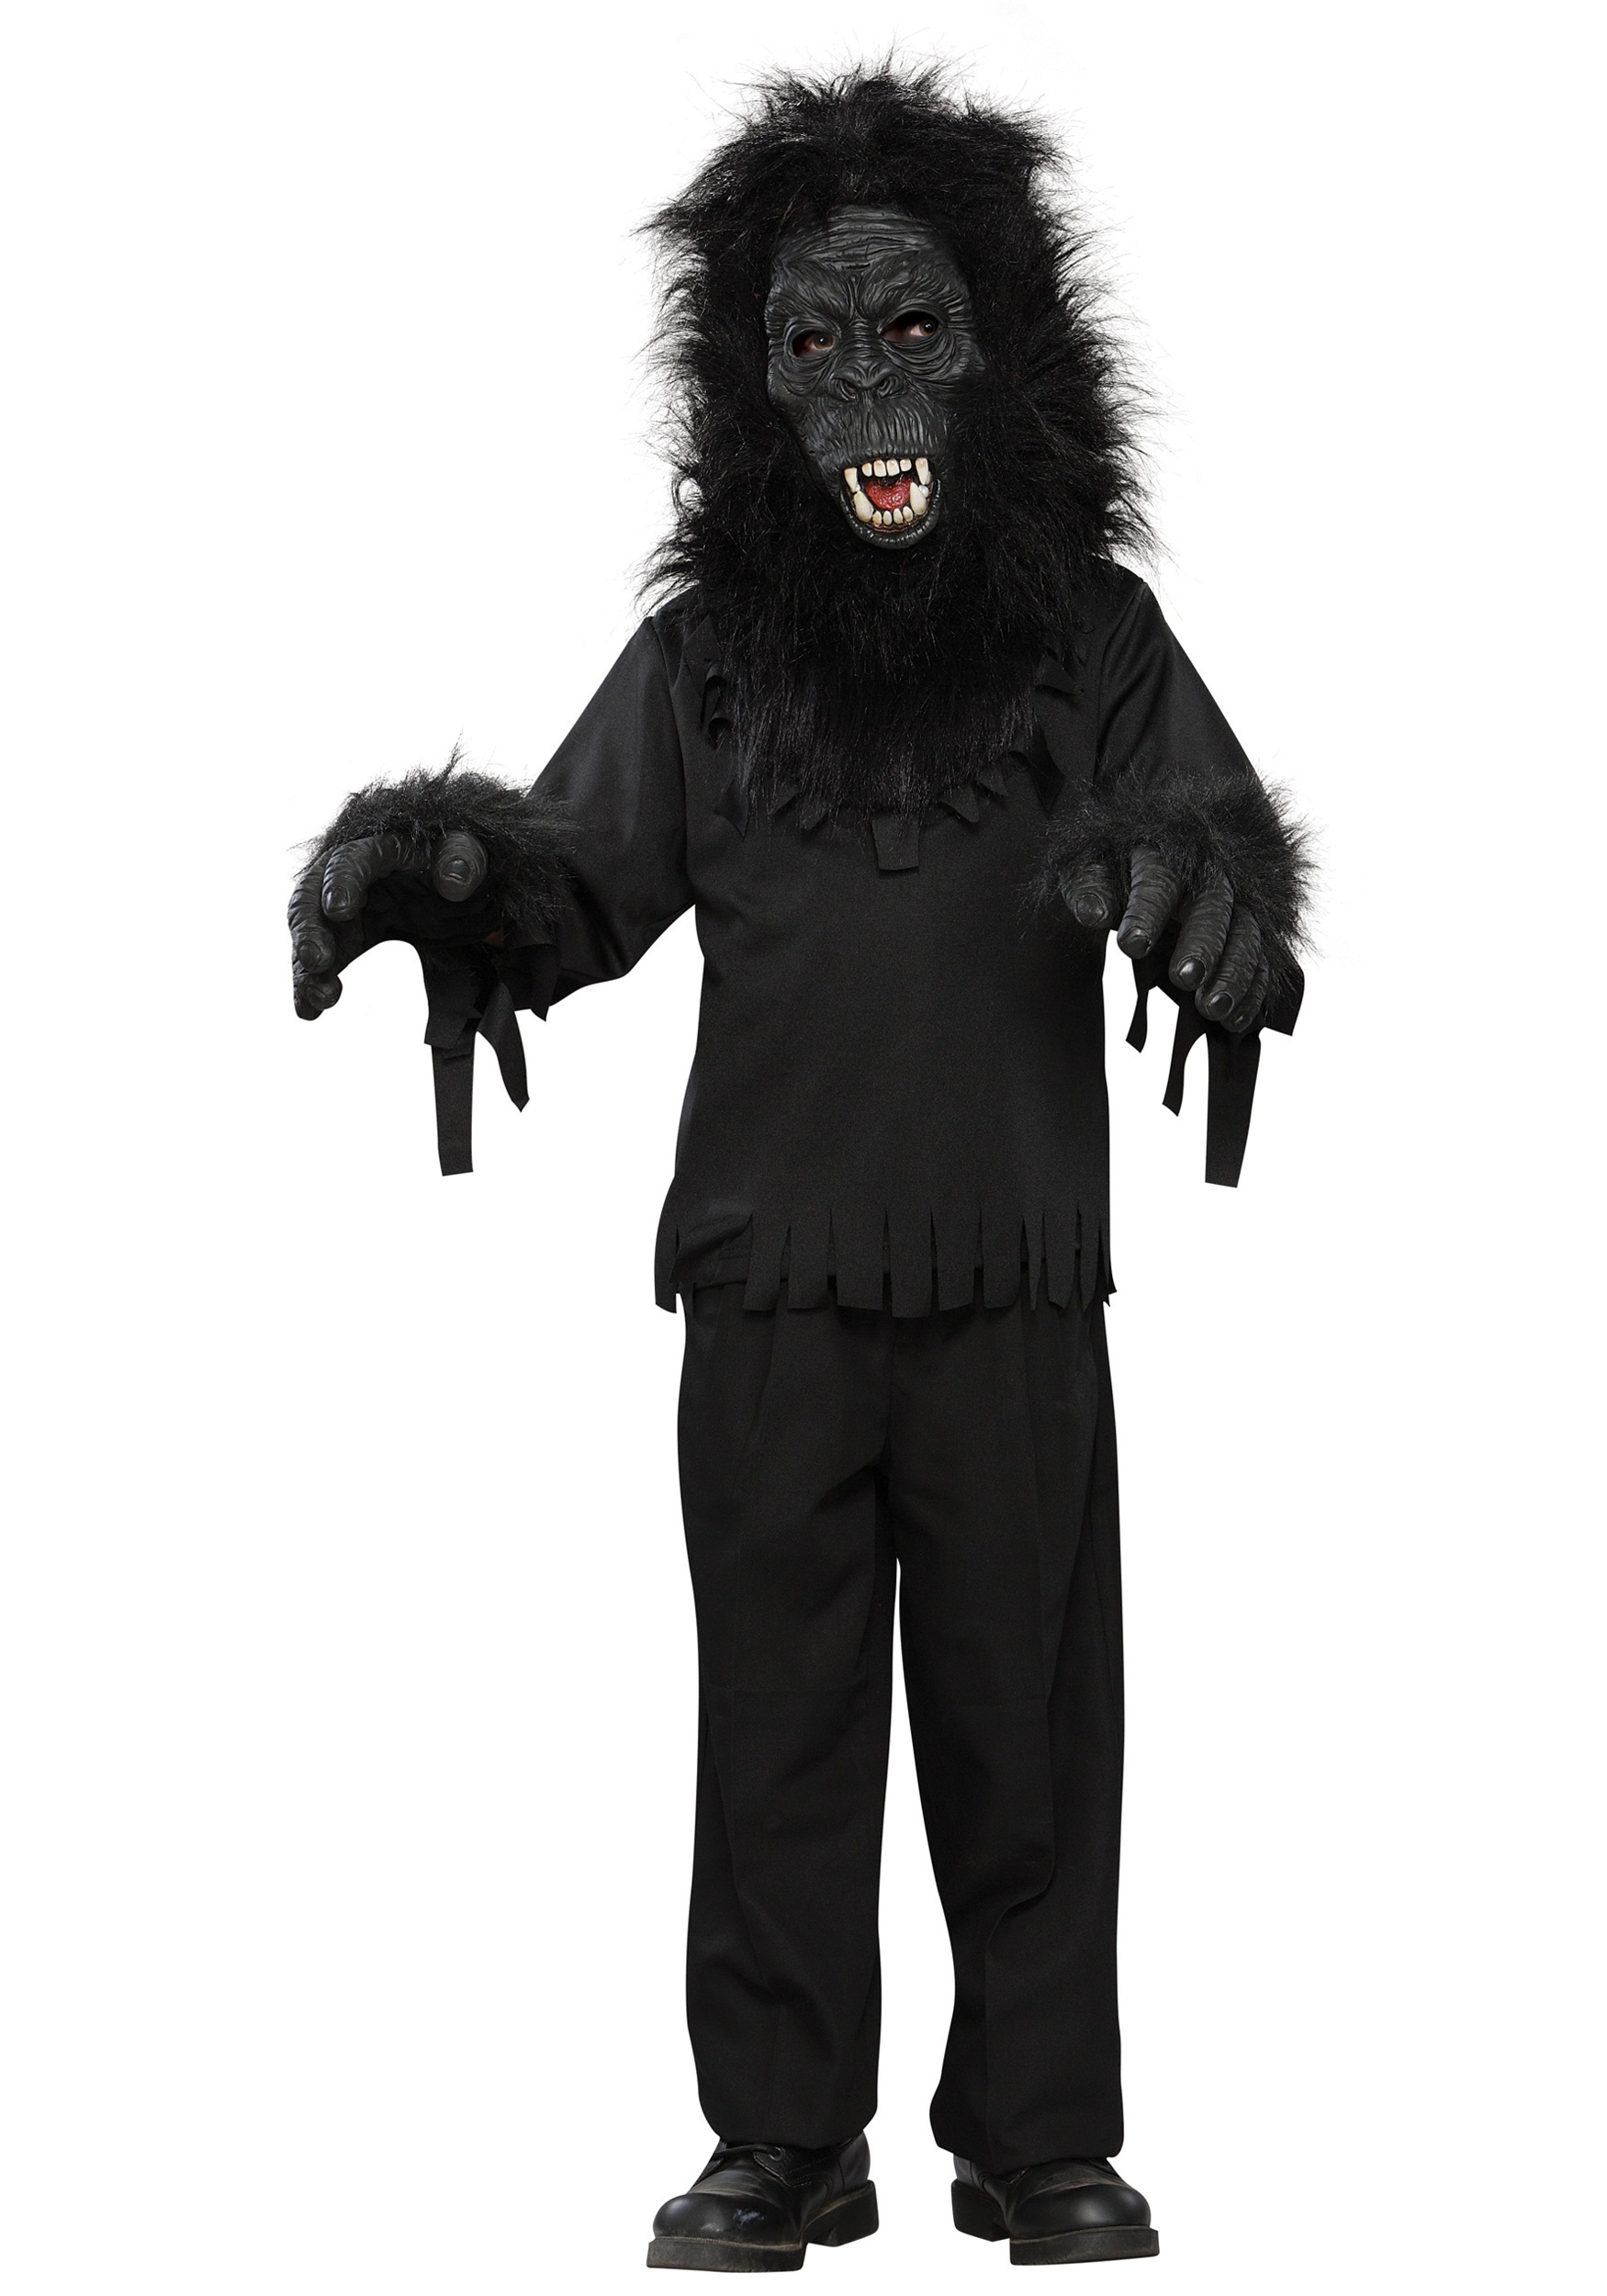 Child Black Gorilla Costume